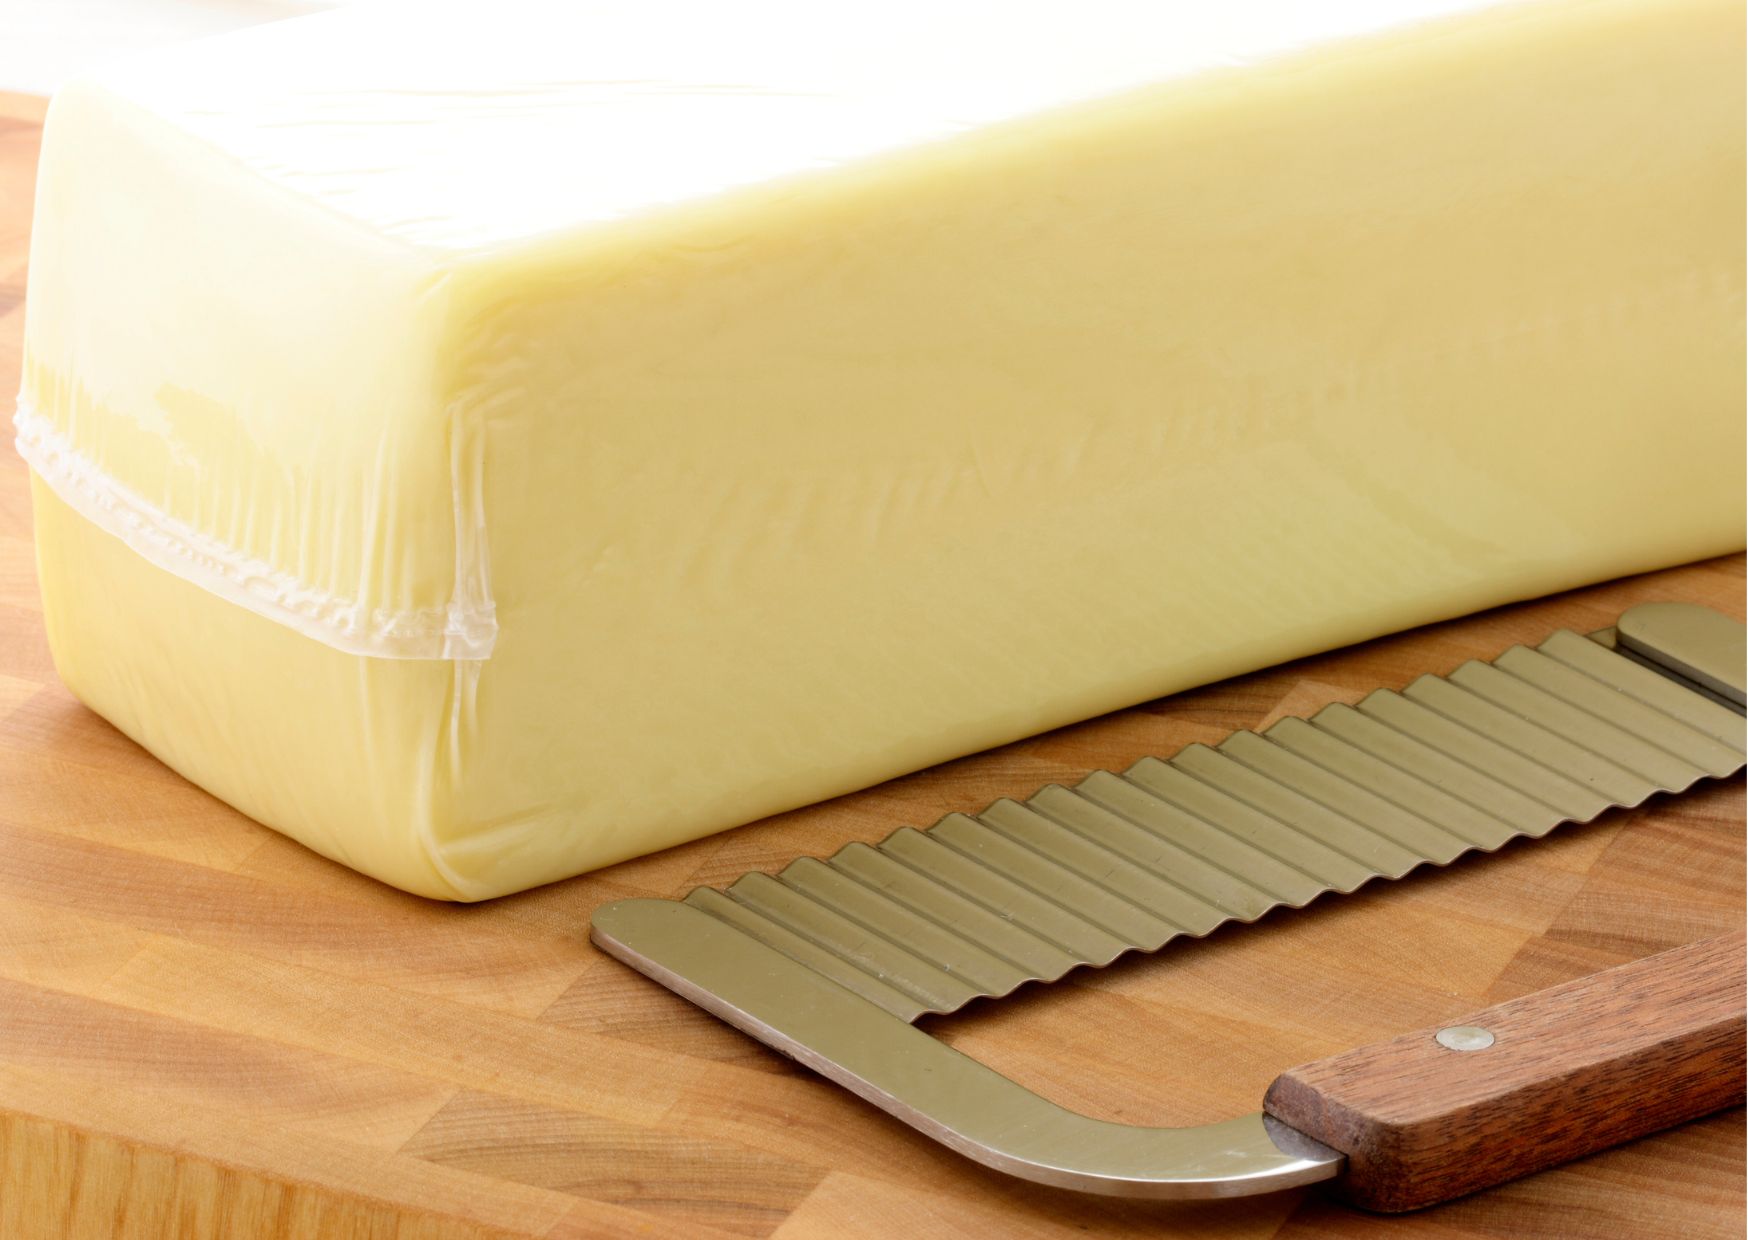 Aprenda a fazer queijo mussarela caseiro e nunca mais gaste muito comprando pronto